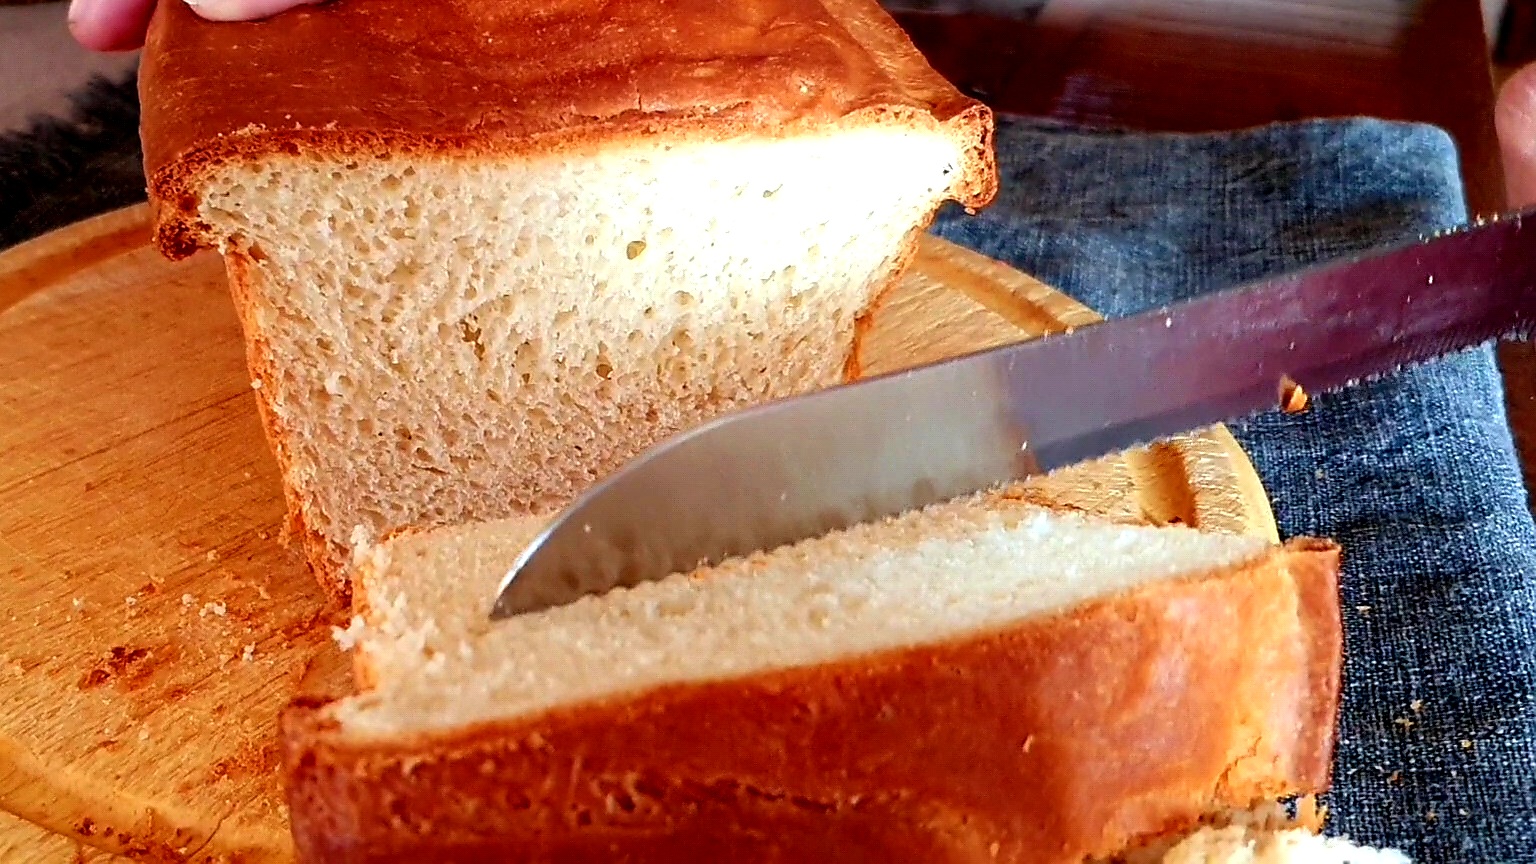 Tomuto sa kupovaný nevyrovná! Domáci toastový chlieb, VIDEORECEPT |  Dobruchut.sk